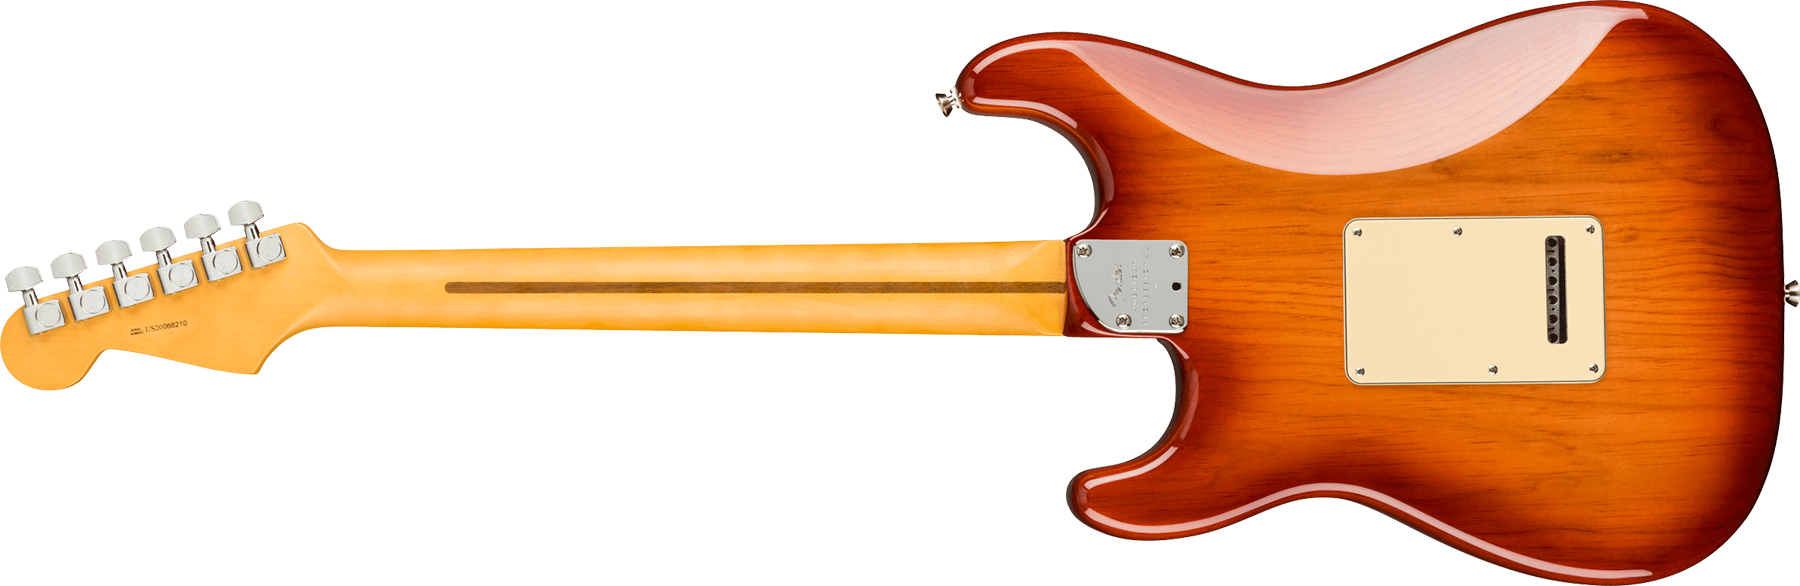 Fender Strat American Professional Ii Usa Mn - Sienna Sunburst - Elektrische gitaar in Str-vorm - Variation 1